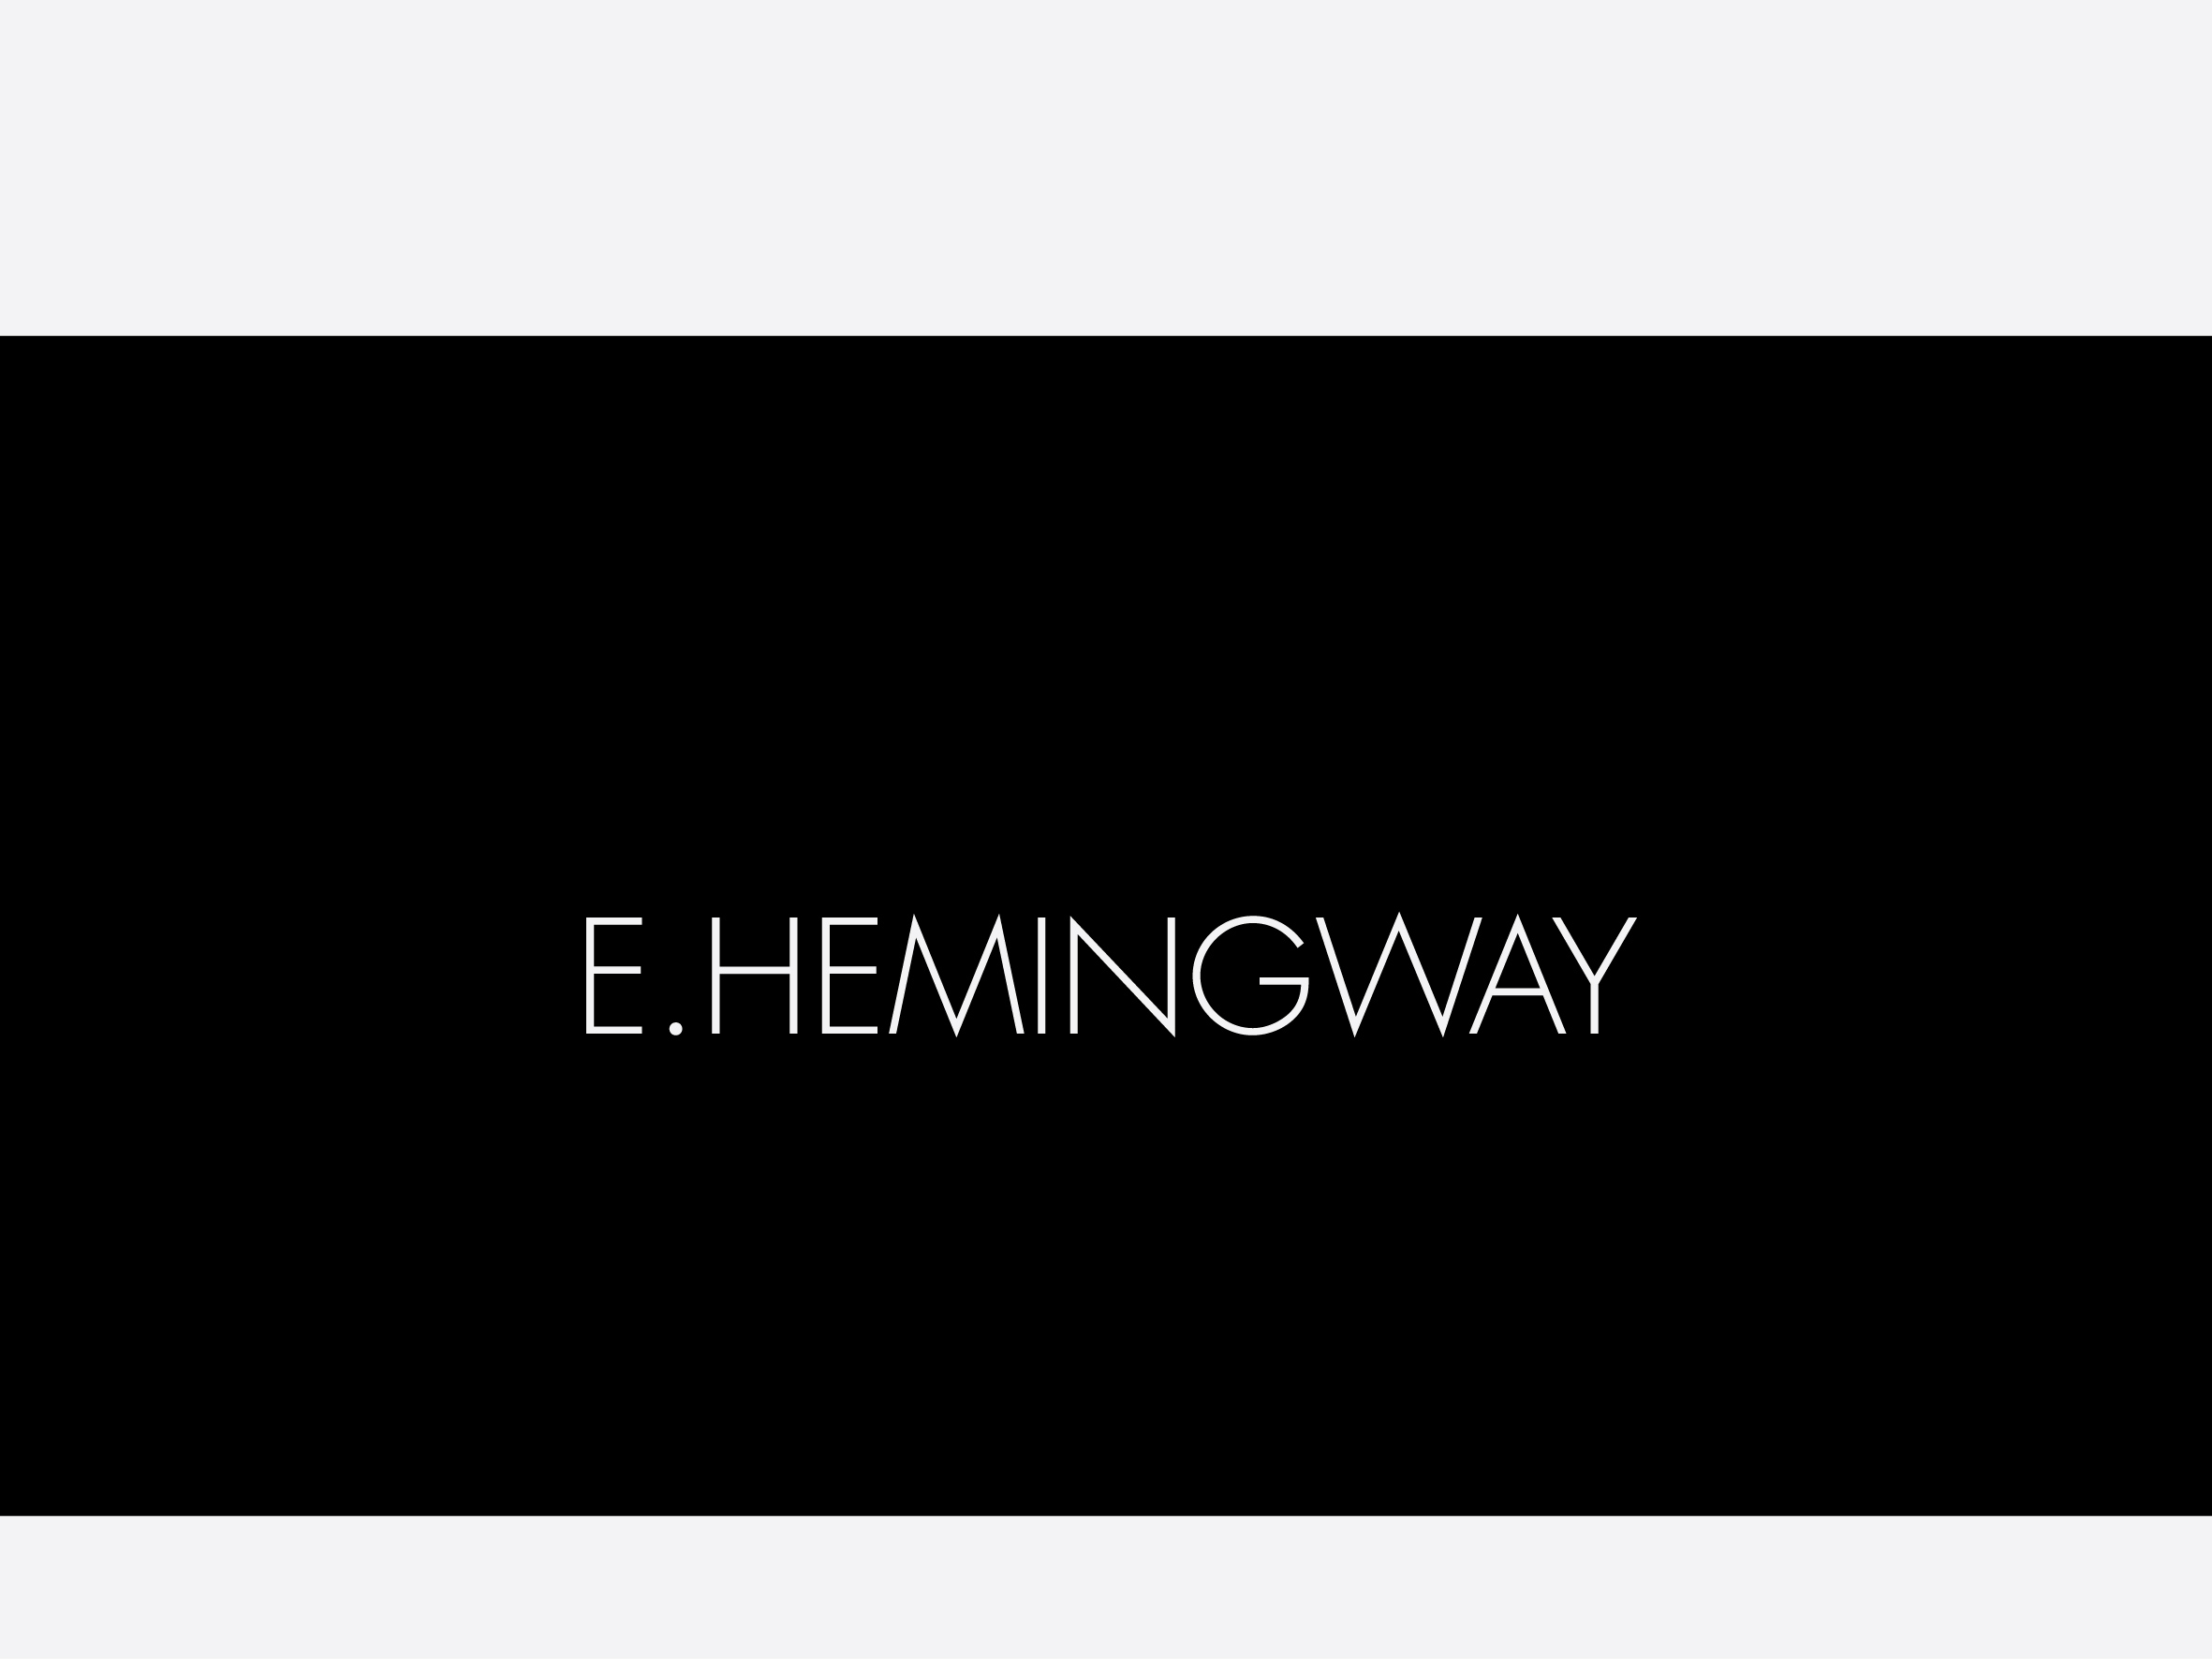 EHemingway-14.jpg